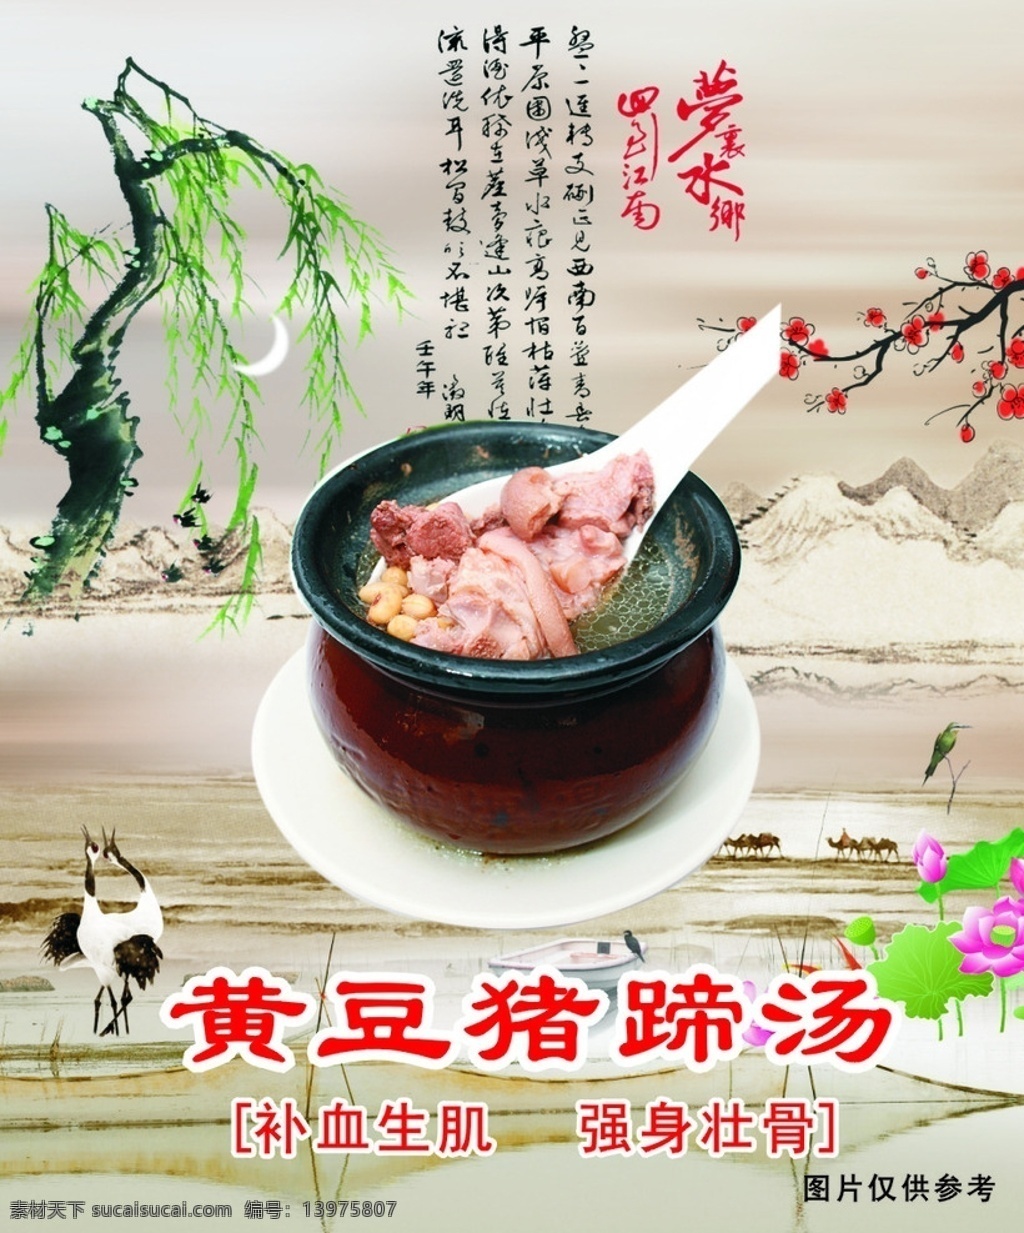 黄豆猪蹄汤 瓦罐煨汤 矢量图 cdr9 高清 餐饮美食 生活百科 饮食